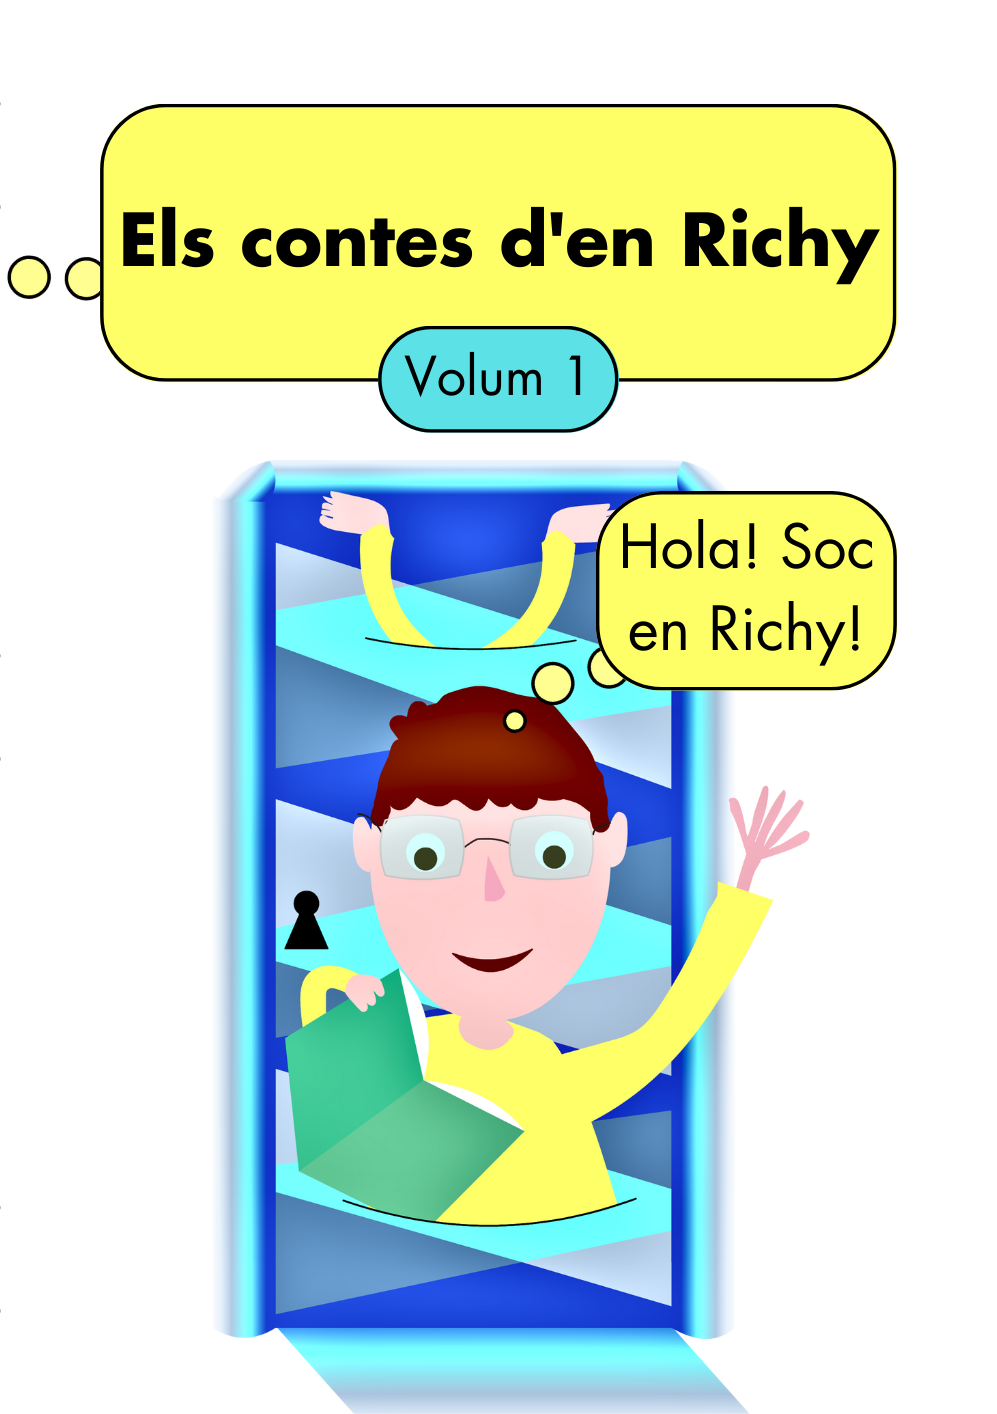 Els contes d’en Richy volum 1